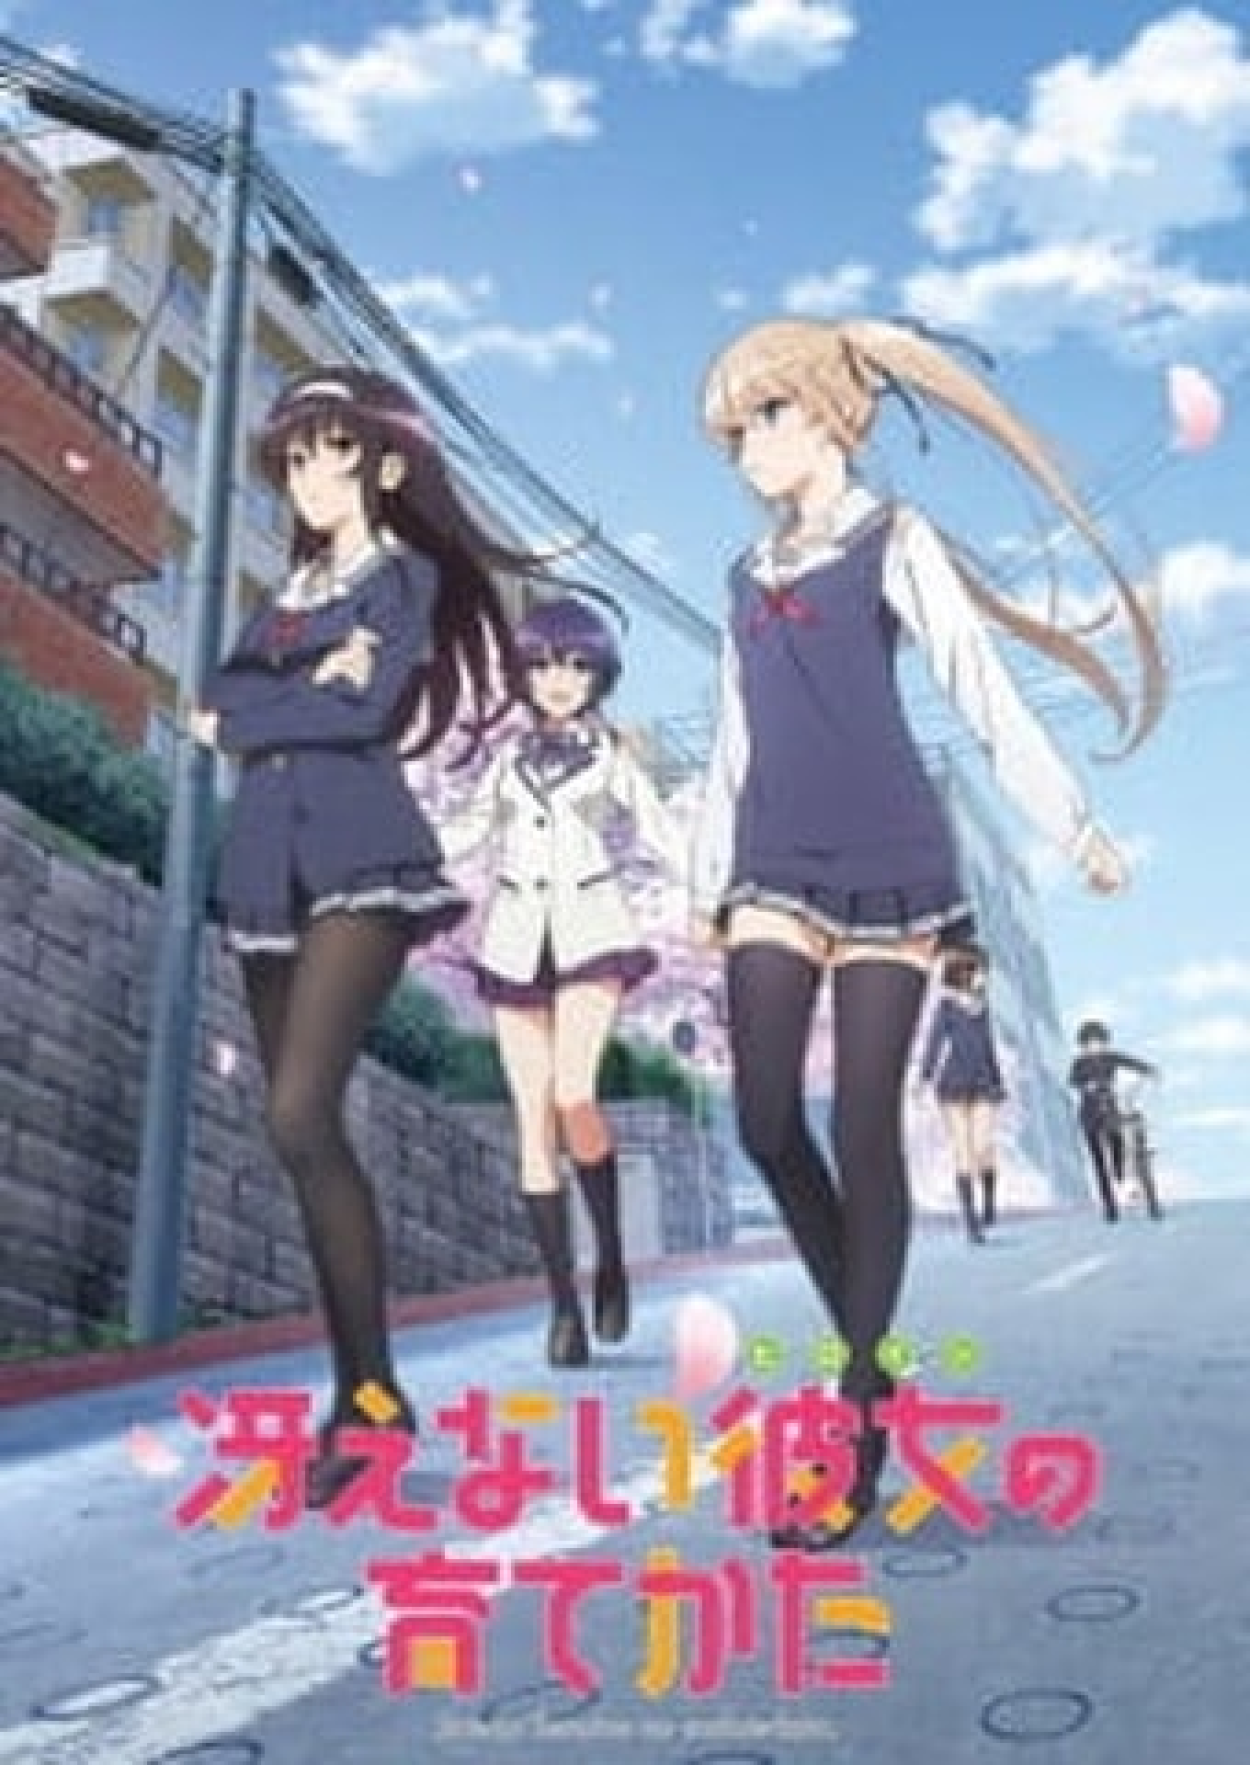 Anime Satsuriku no Tenshi - Sinopse, Trailers, Curiosidades e muito mais -  Cinema10